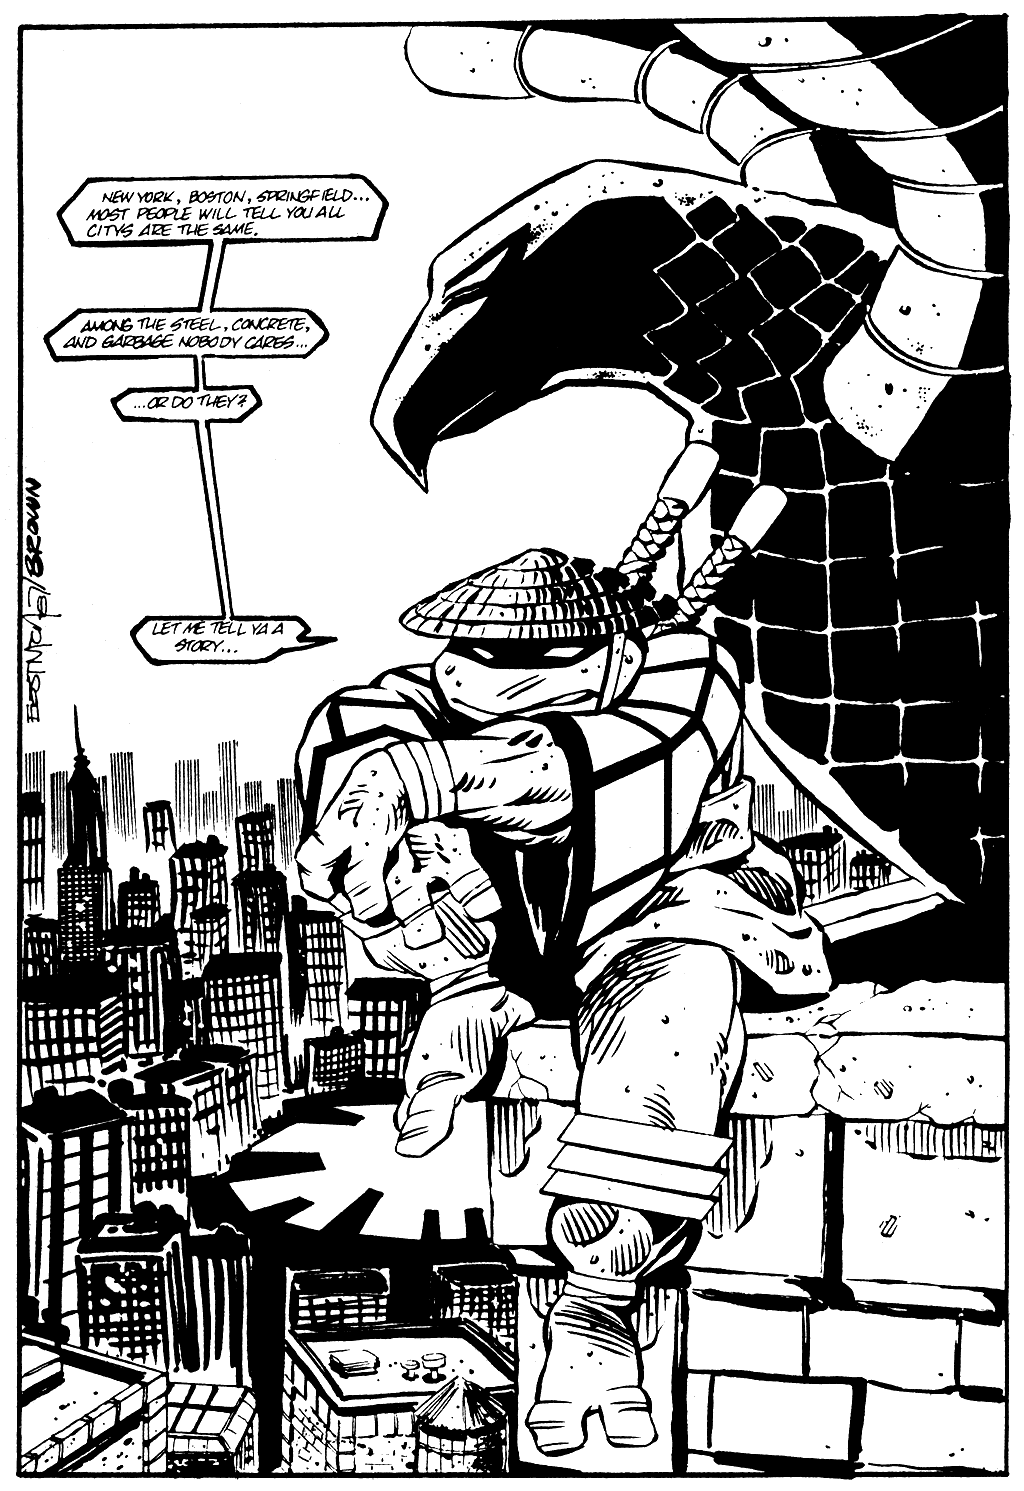 Tales of the Teenage Mutant Ninja Turtles issue 2 - Page 3